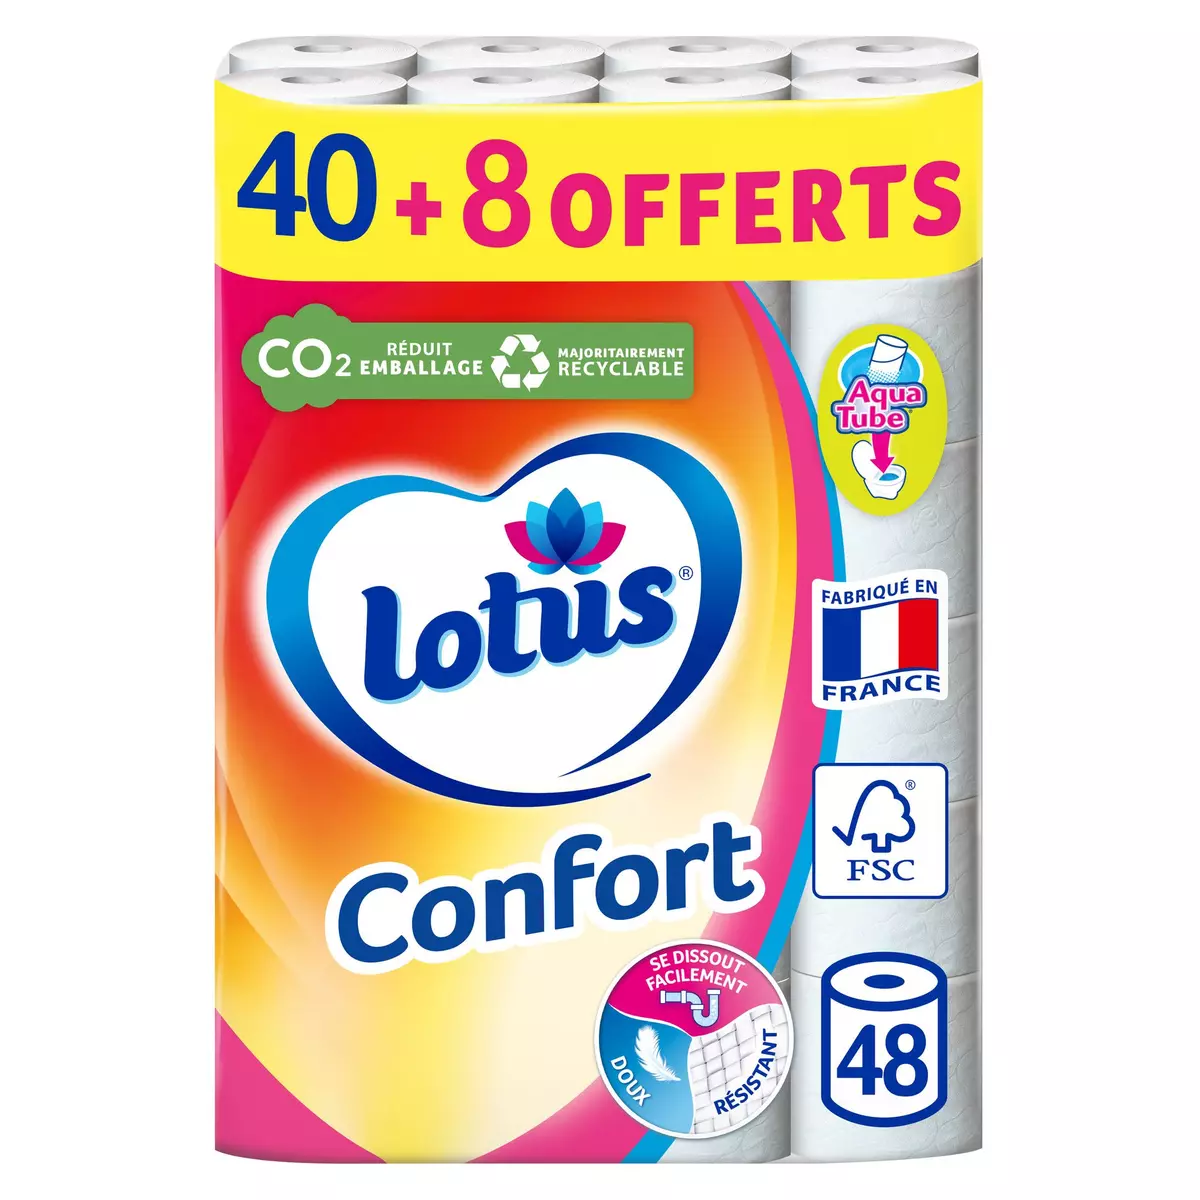 LOTUS Confort Papier toilette blanc aquatube 48 rouleaux